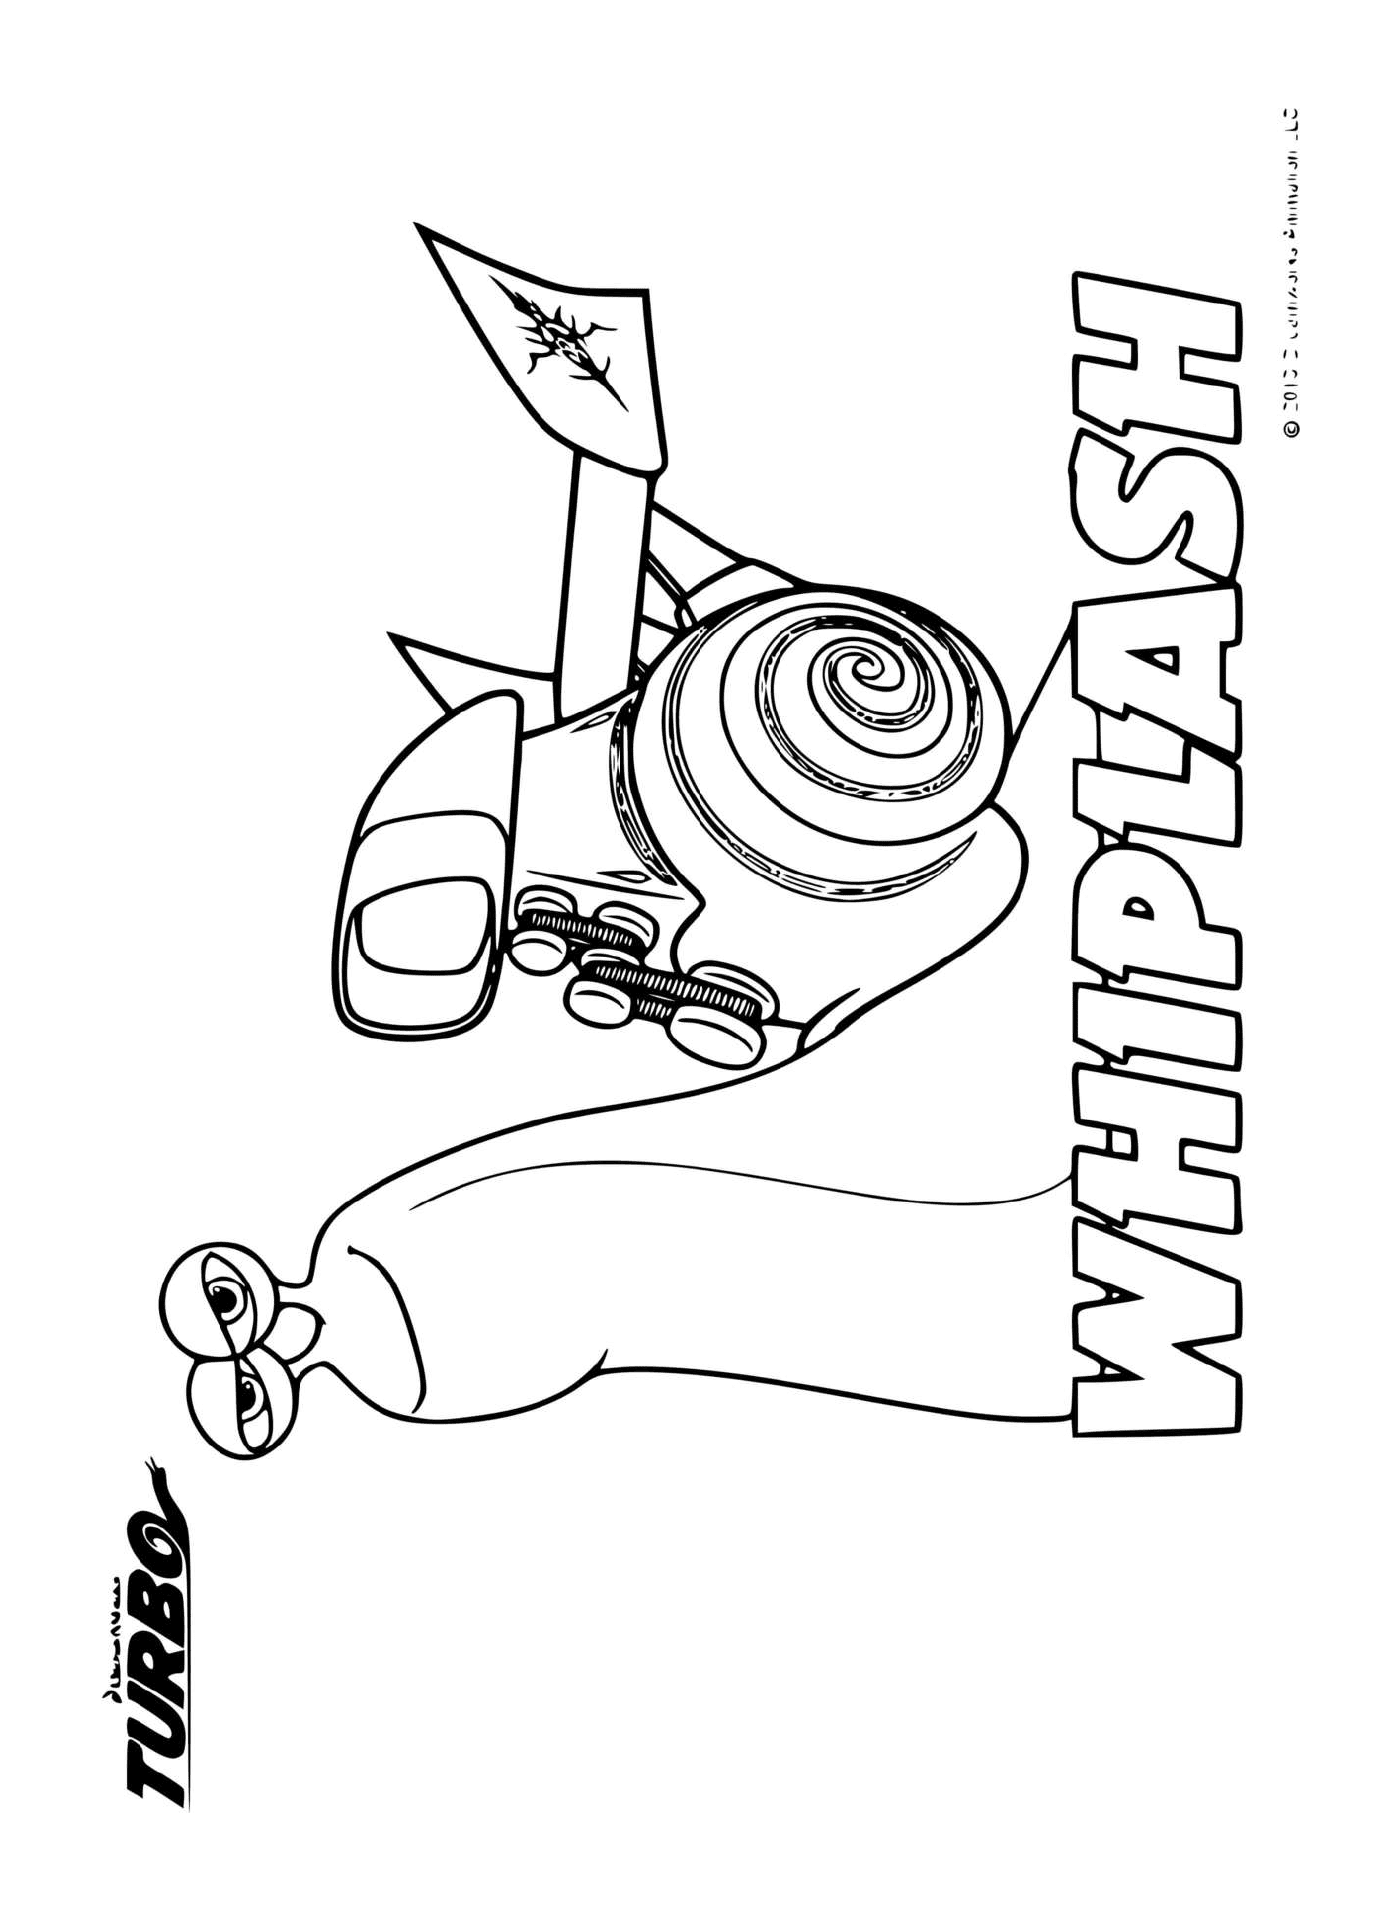  Turbo Whiplash, die Schnecke mit einer Legende 